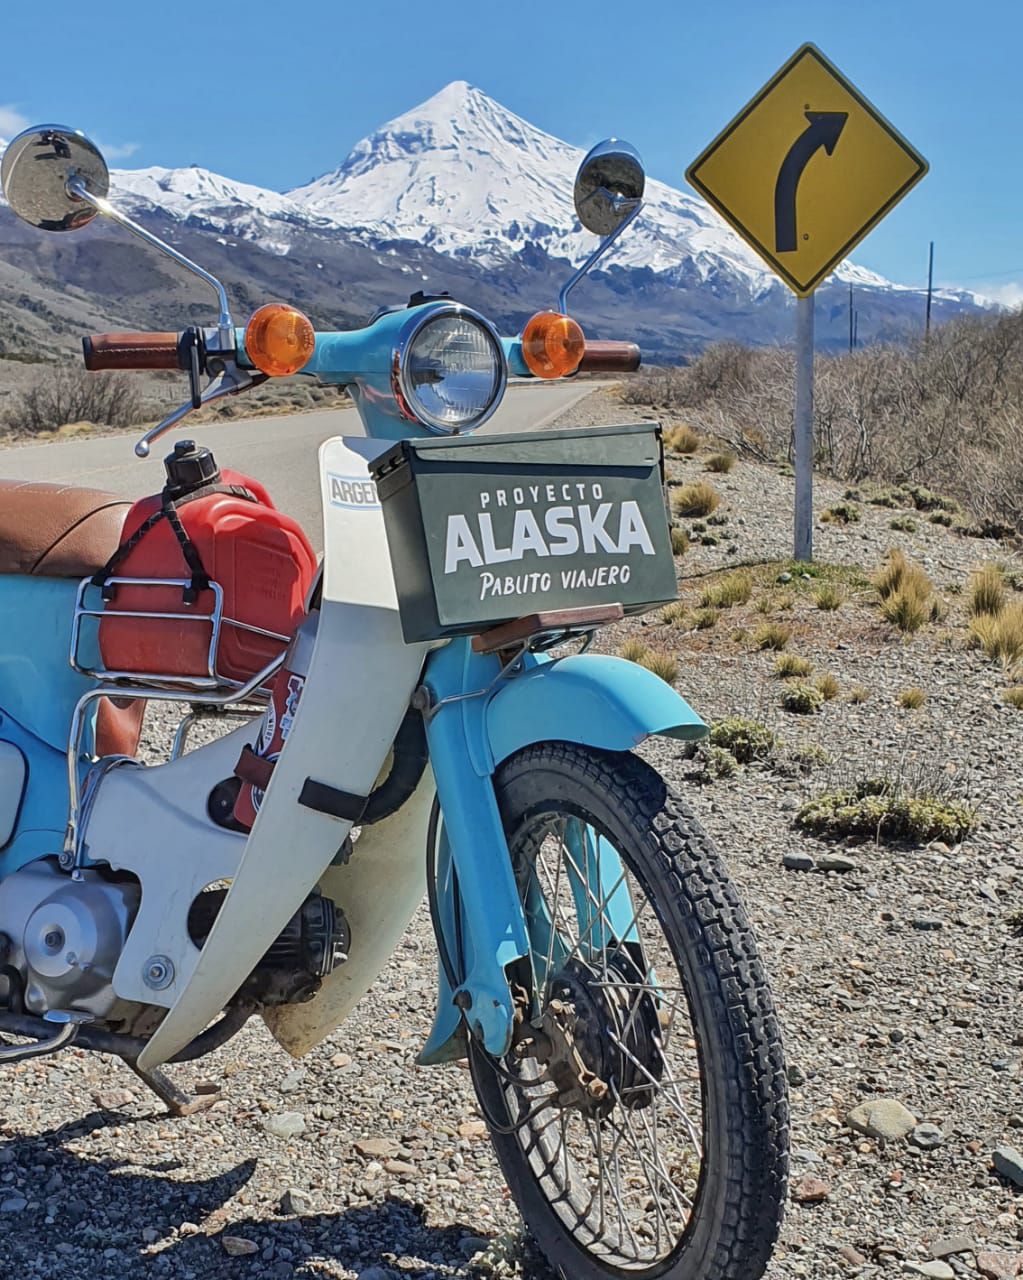 "Proyecto Alaska", el proyecto de viaje que el joven está realizando, donde pretende recorrer todo el continente Americano arriba de su moto.